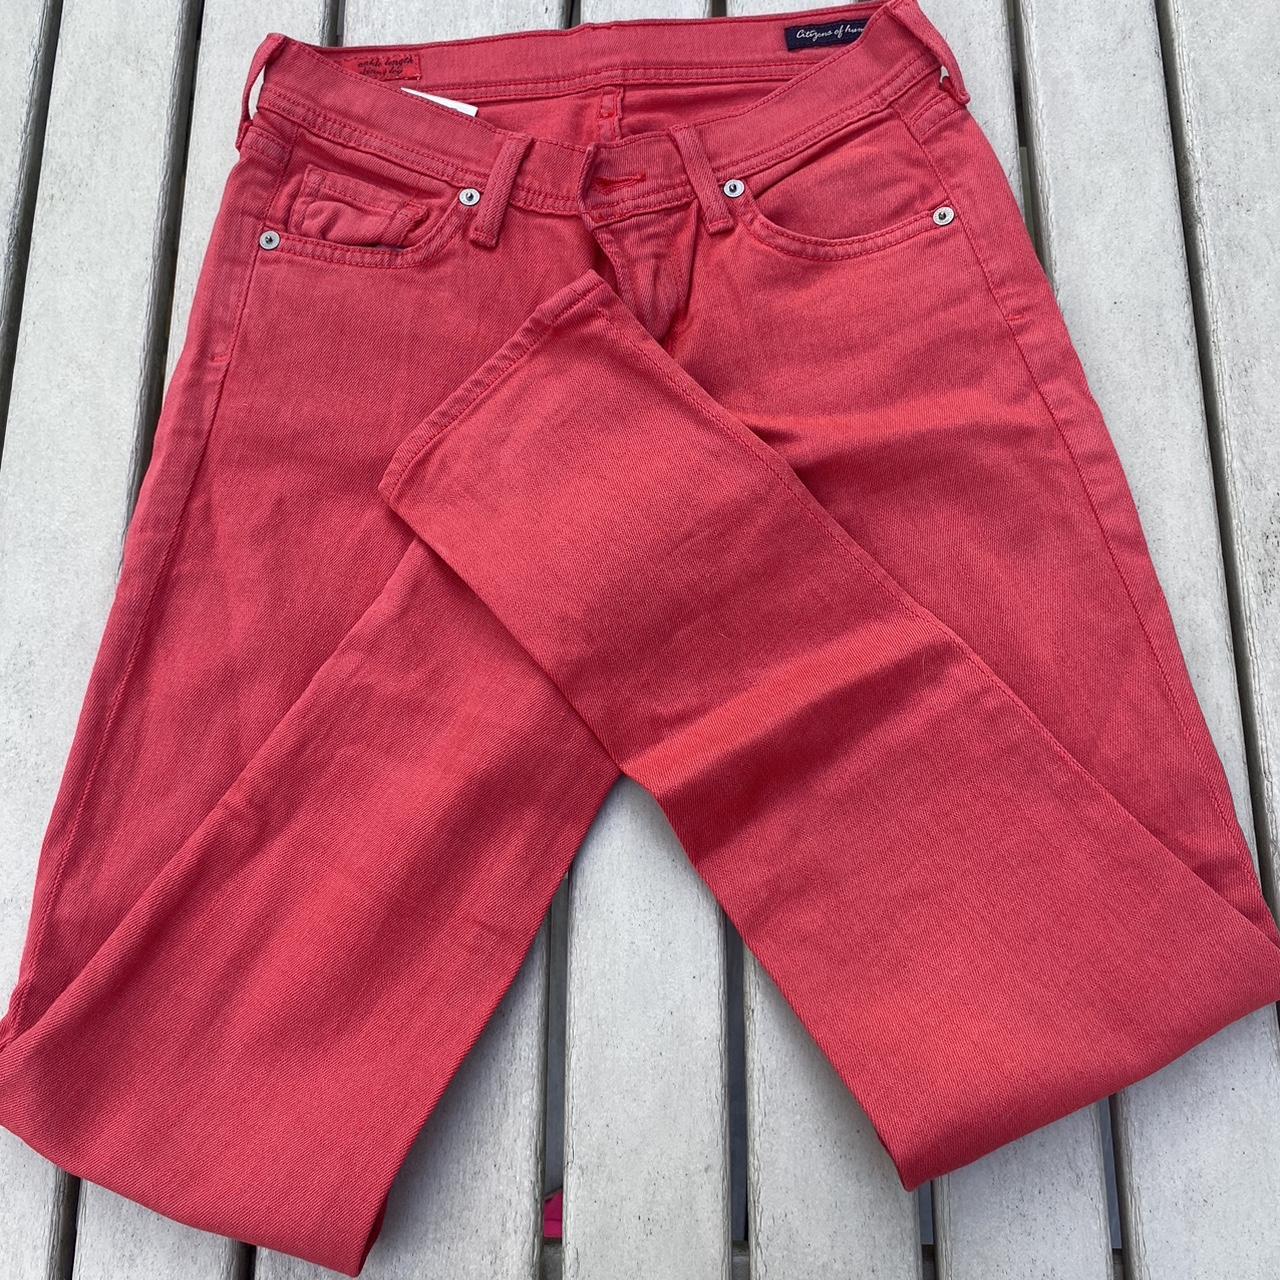 Women’s red jeans - Depop